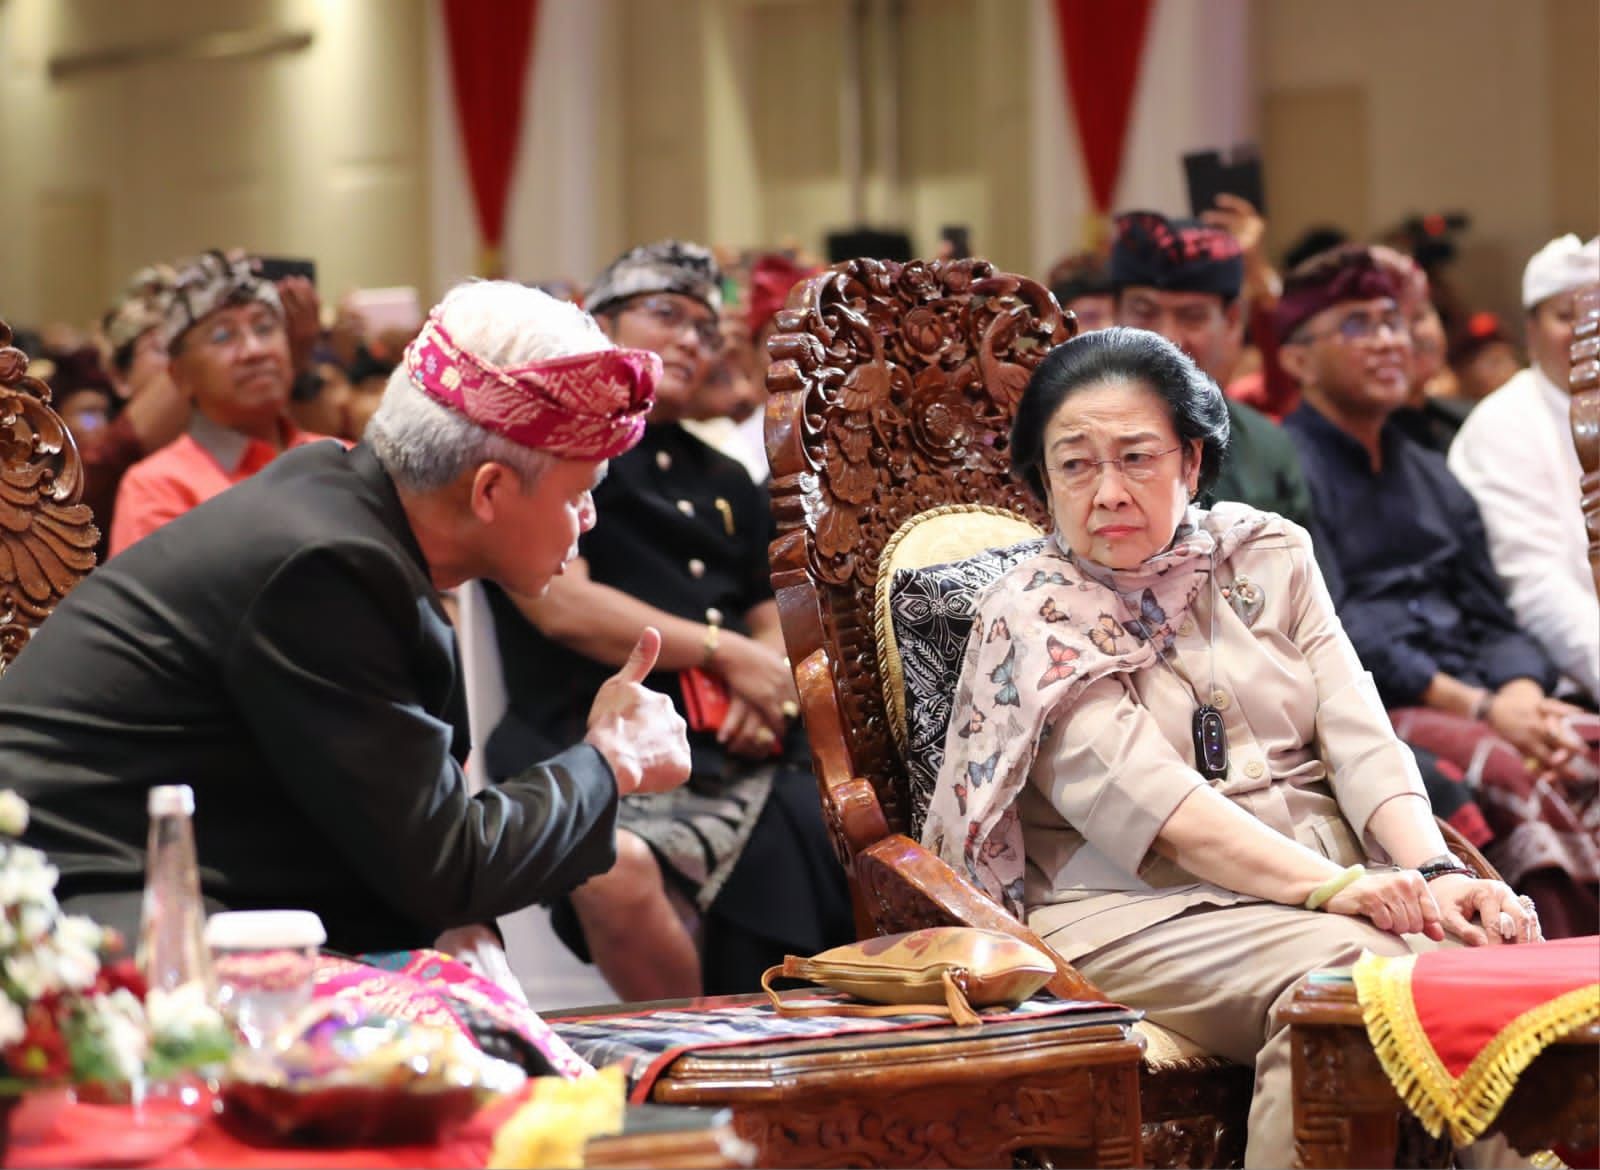 Di Depan Megawati, Ganjar Pranowo: Kalau Jadi Pemimpin, Ya Siap Diinjak Kepalanya